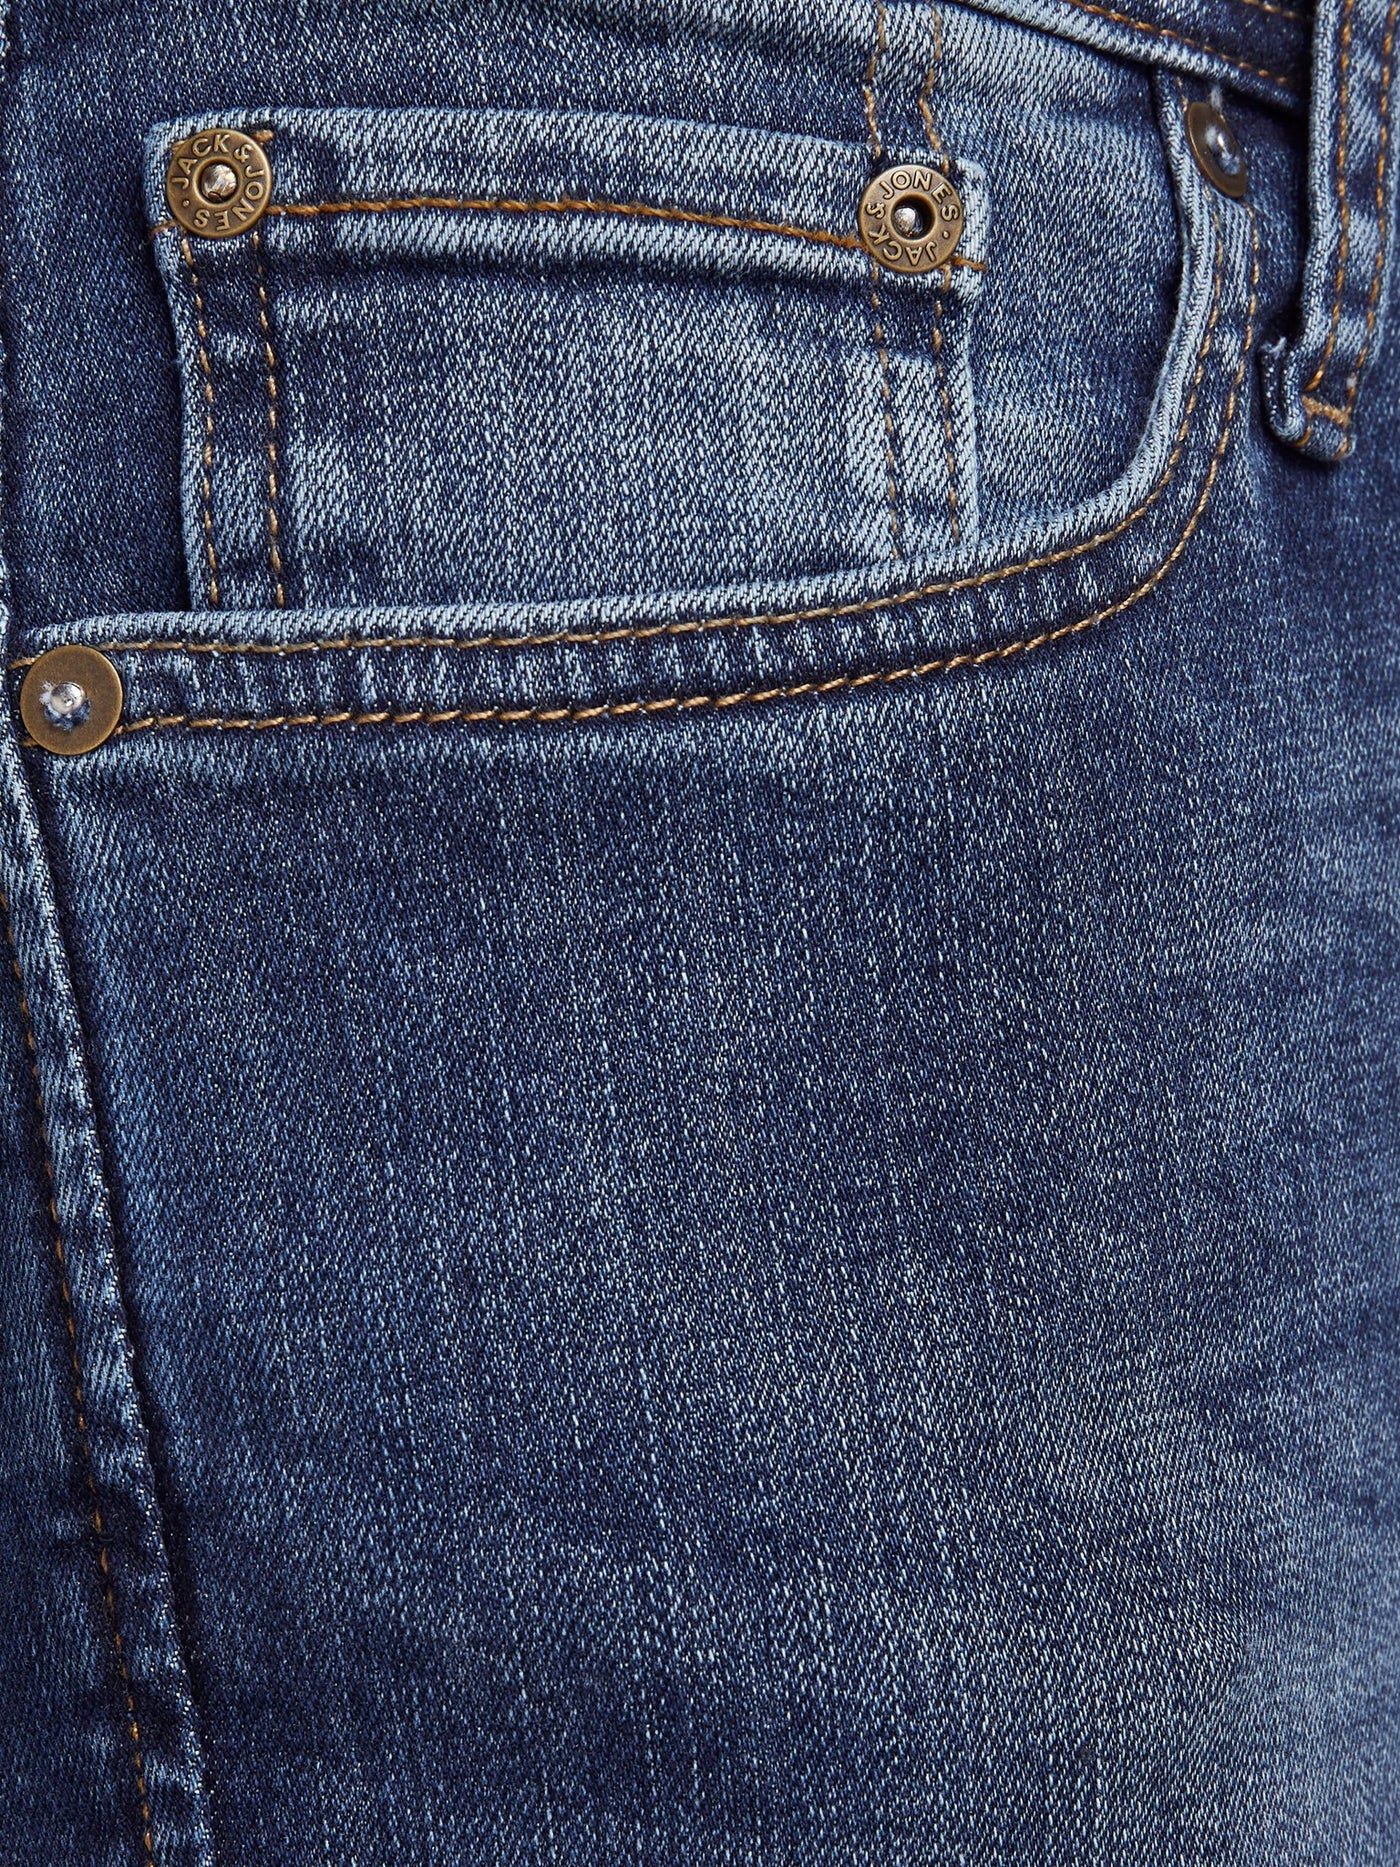 Liam Original Jeans 005 - Blå denim - Jack & Jones - Blå 3